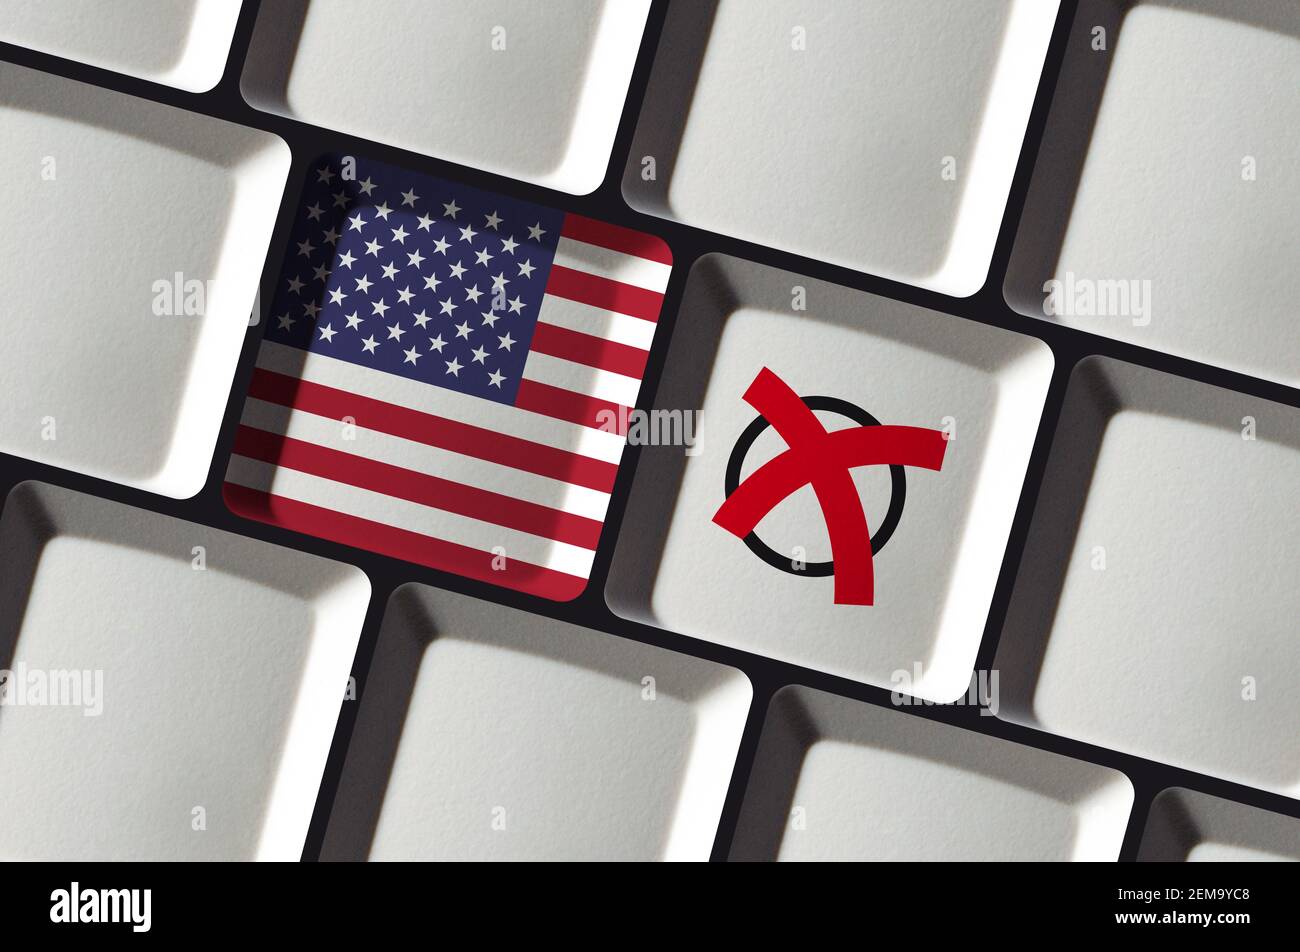 Online-Wahl oder Referendum in den USA - amerikanische Flagge auf Computertastatur Stockfoto